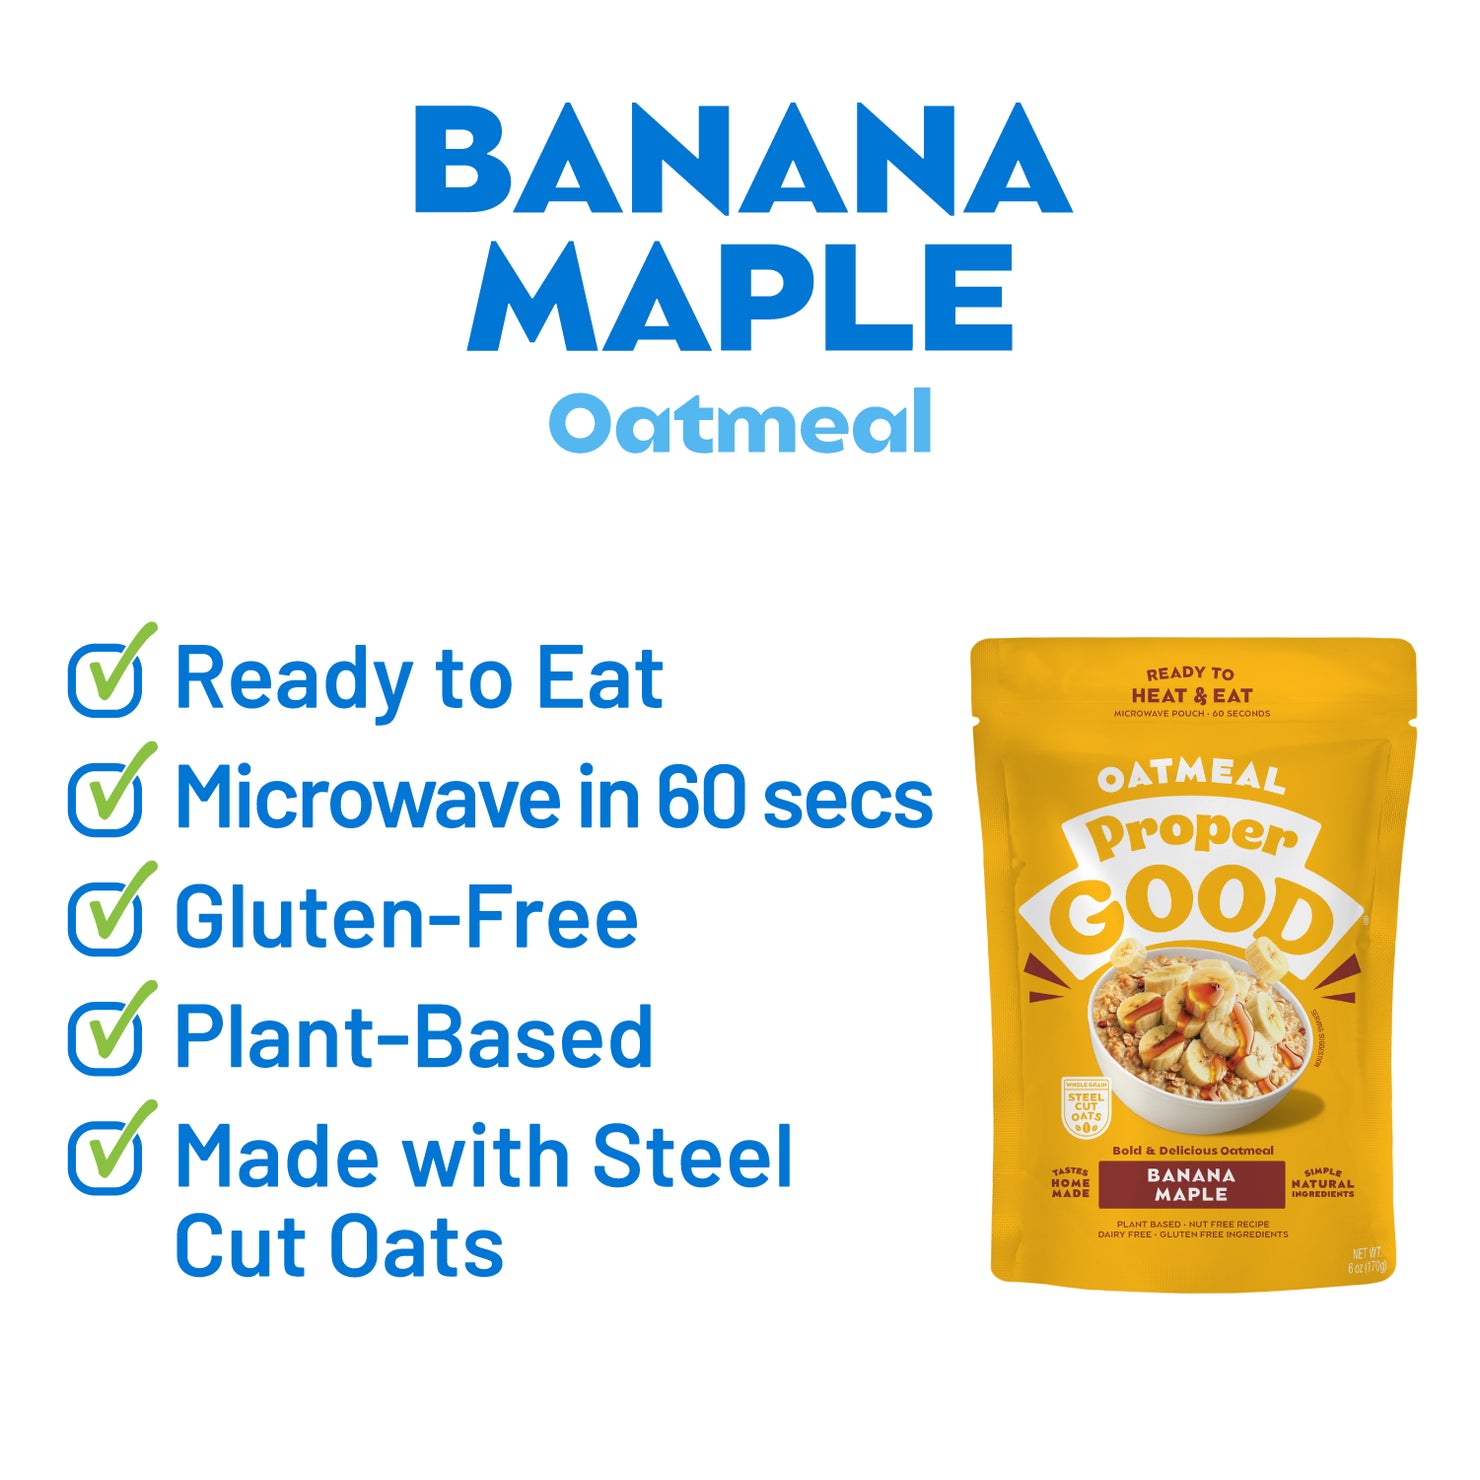  Banana Maple Oatmeal Key Points - Eat Proper Good